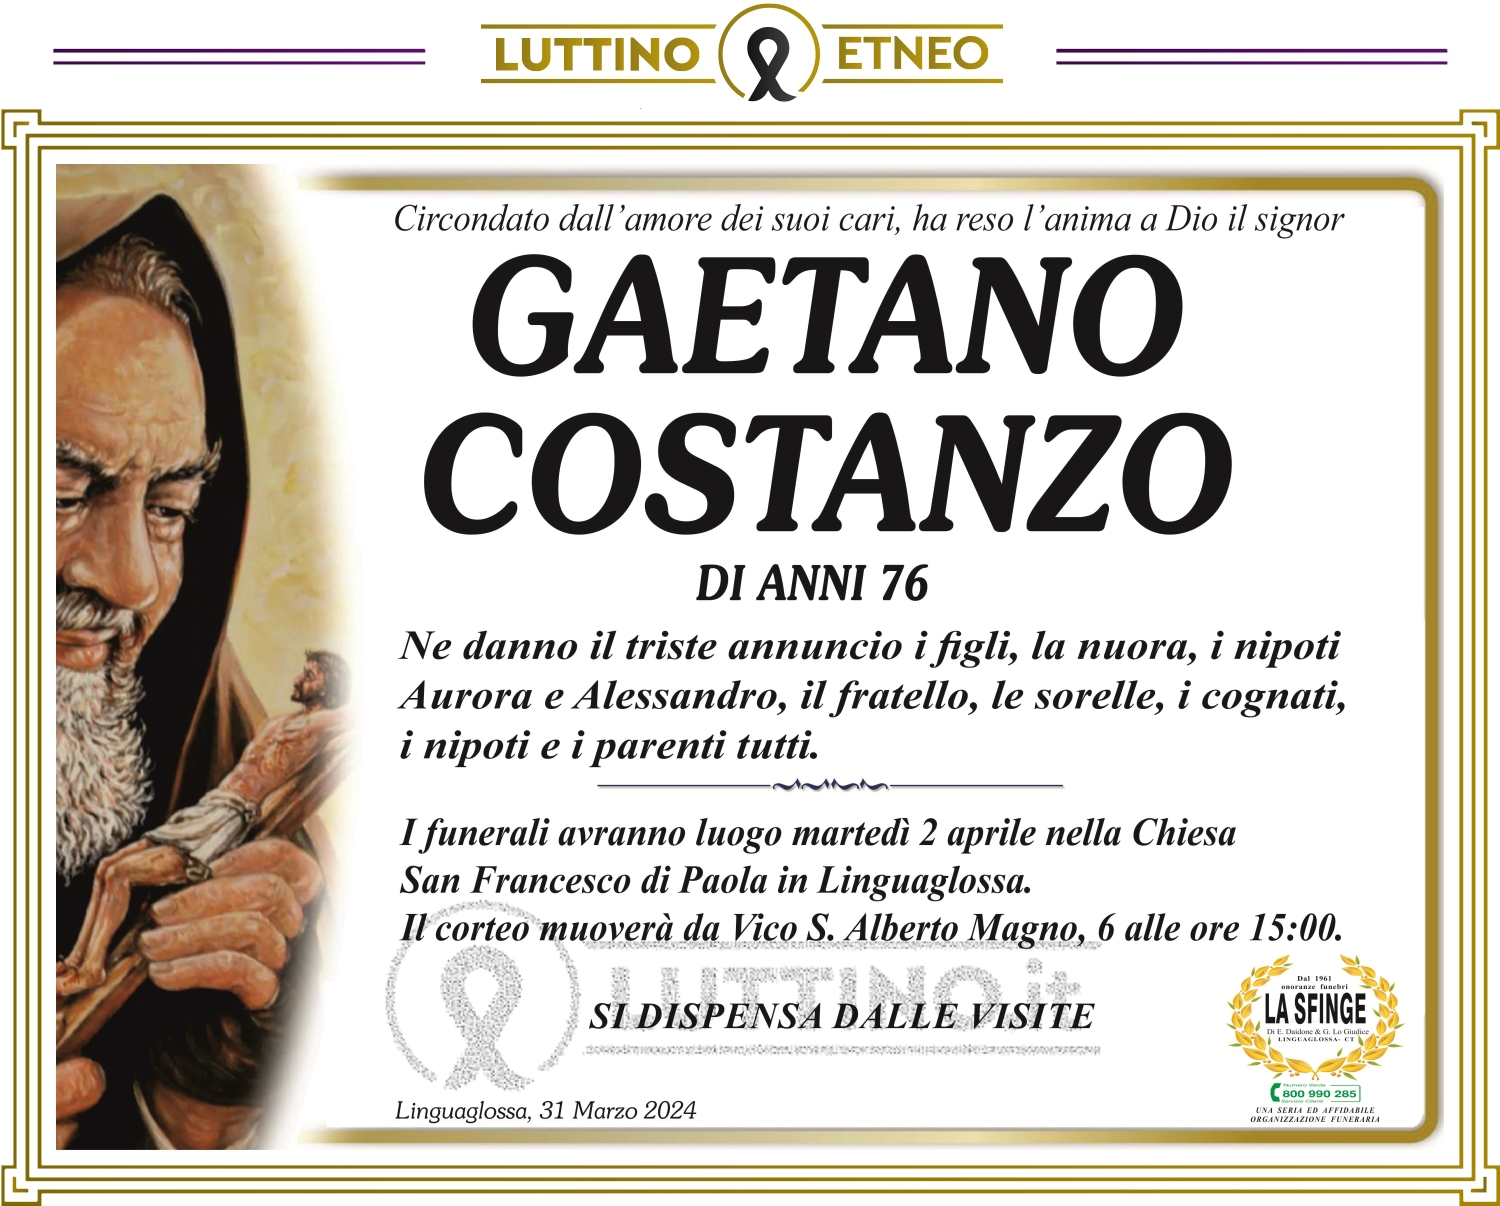 Gaetano Costanzo